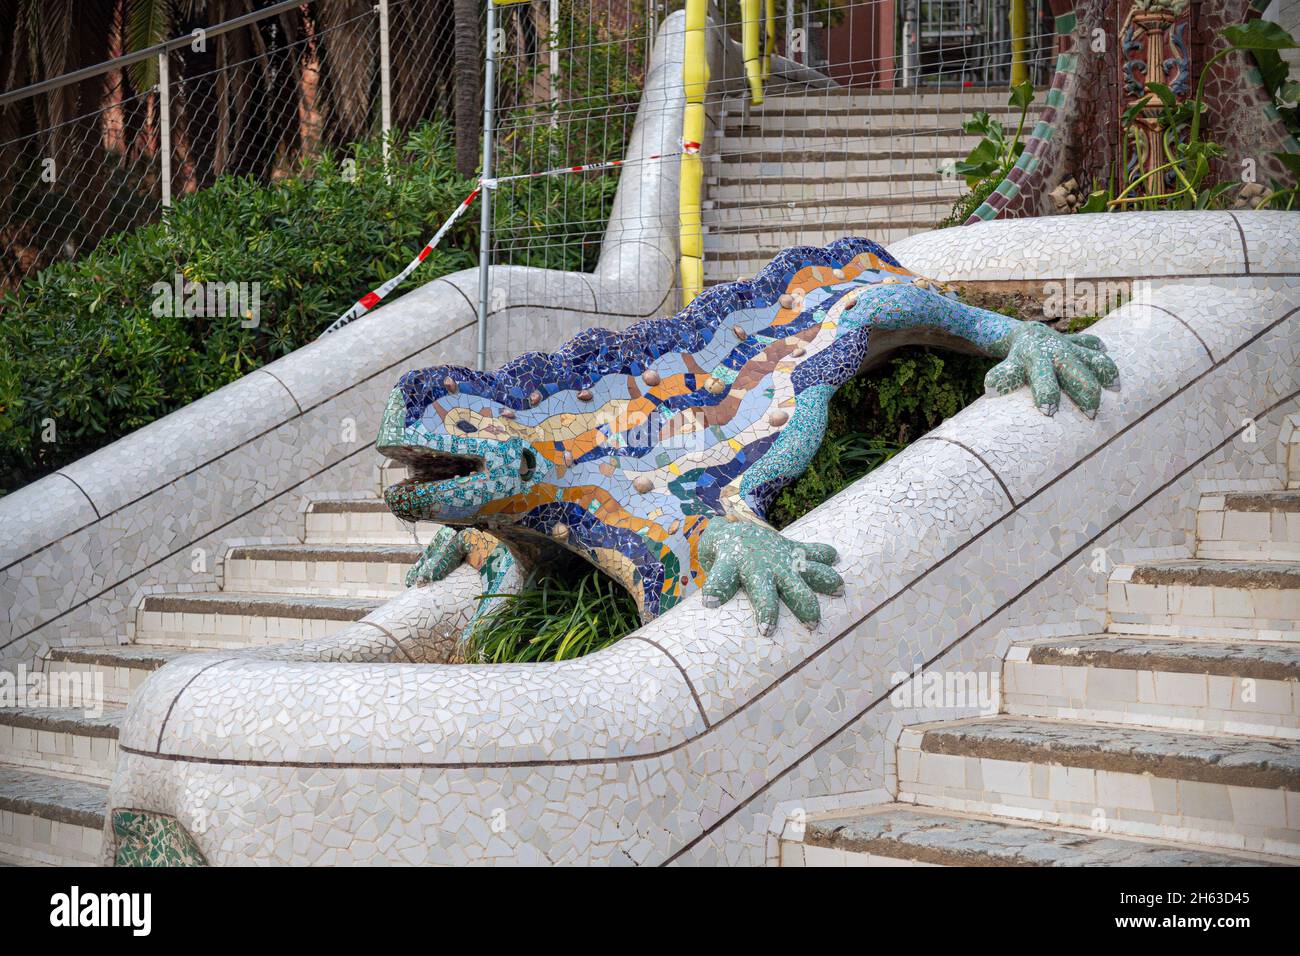 la lucertola a mosaico nel parco artistico guell di antoni gaudí a barcellona, in spagna, questo parco modernistico è stato costruito tra il 1900 e il 1914 ed è una popolare attrazione turistica. Foto Stock